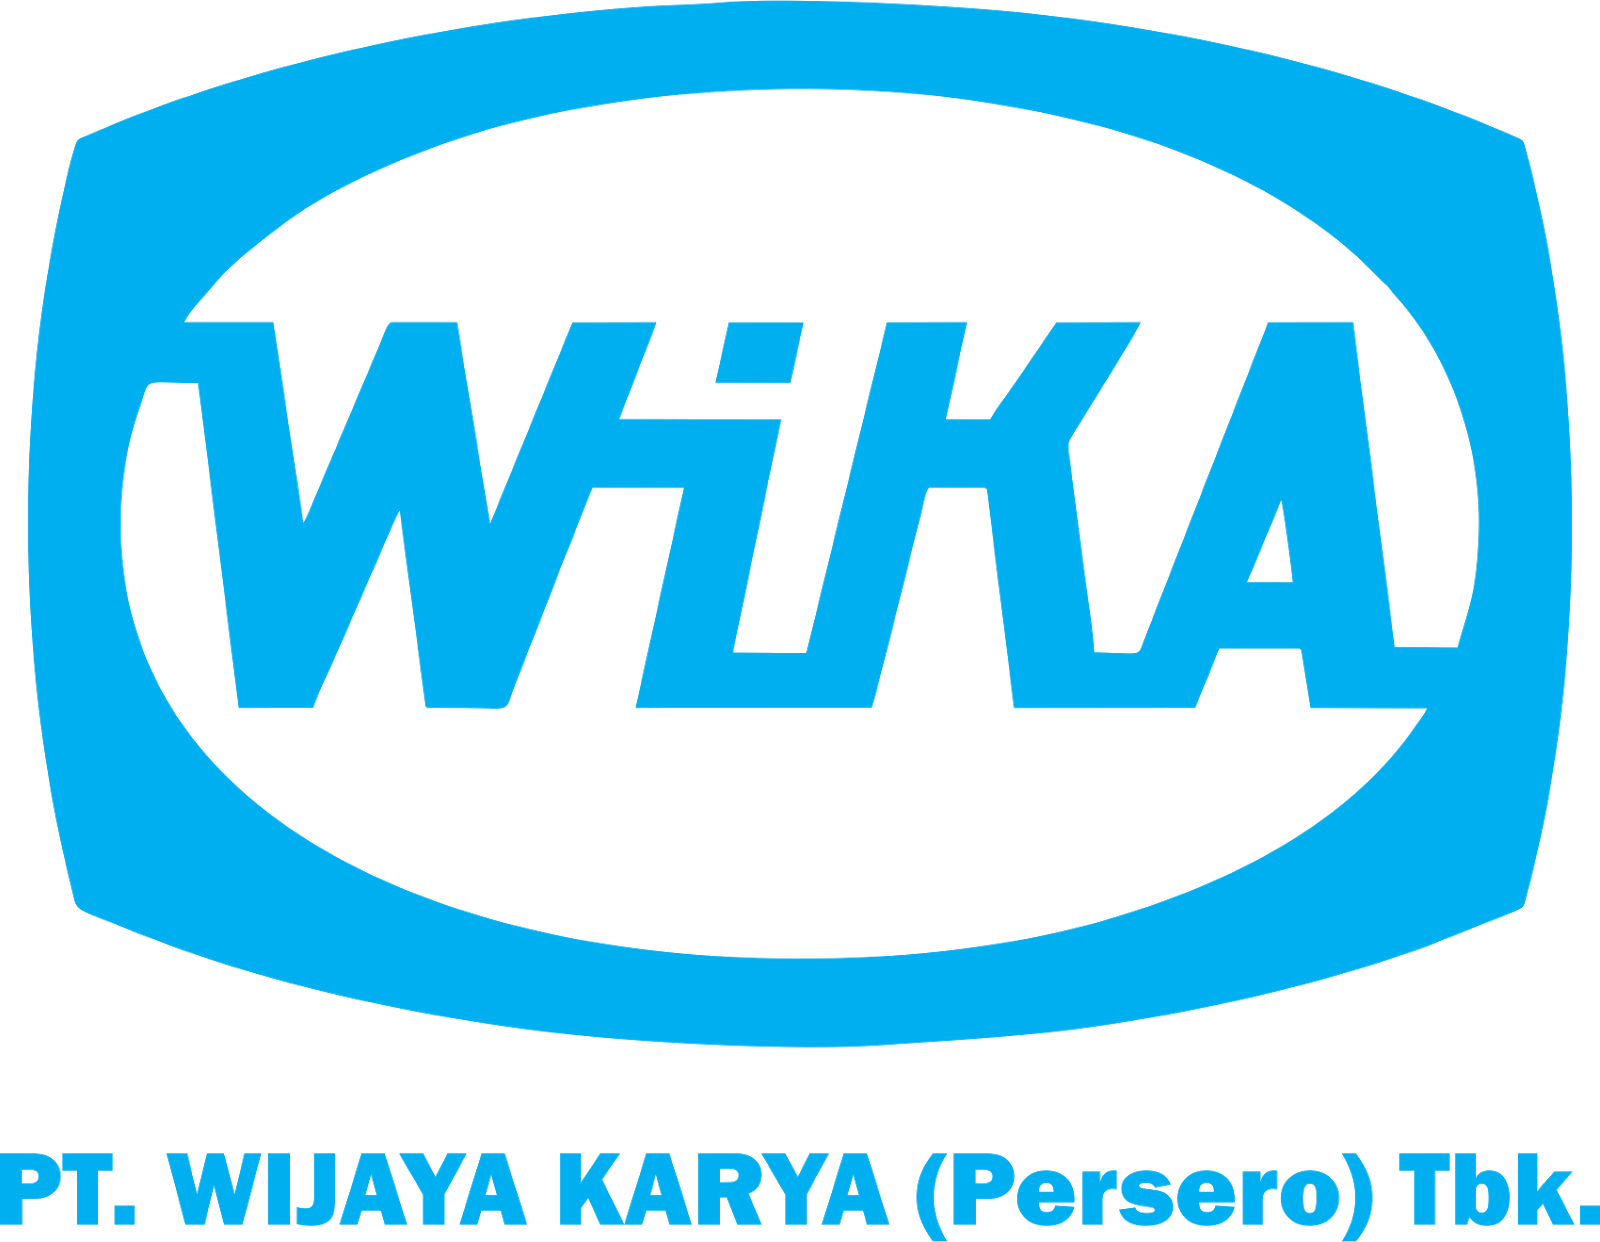 徽标与徽标：印度尼西亚大型建筑公司Wika的主要徽标使用徽标。